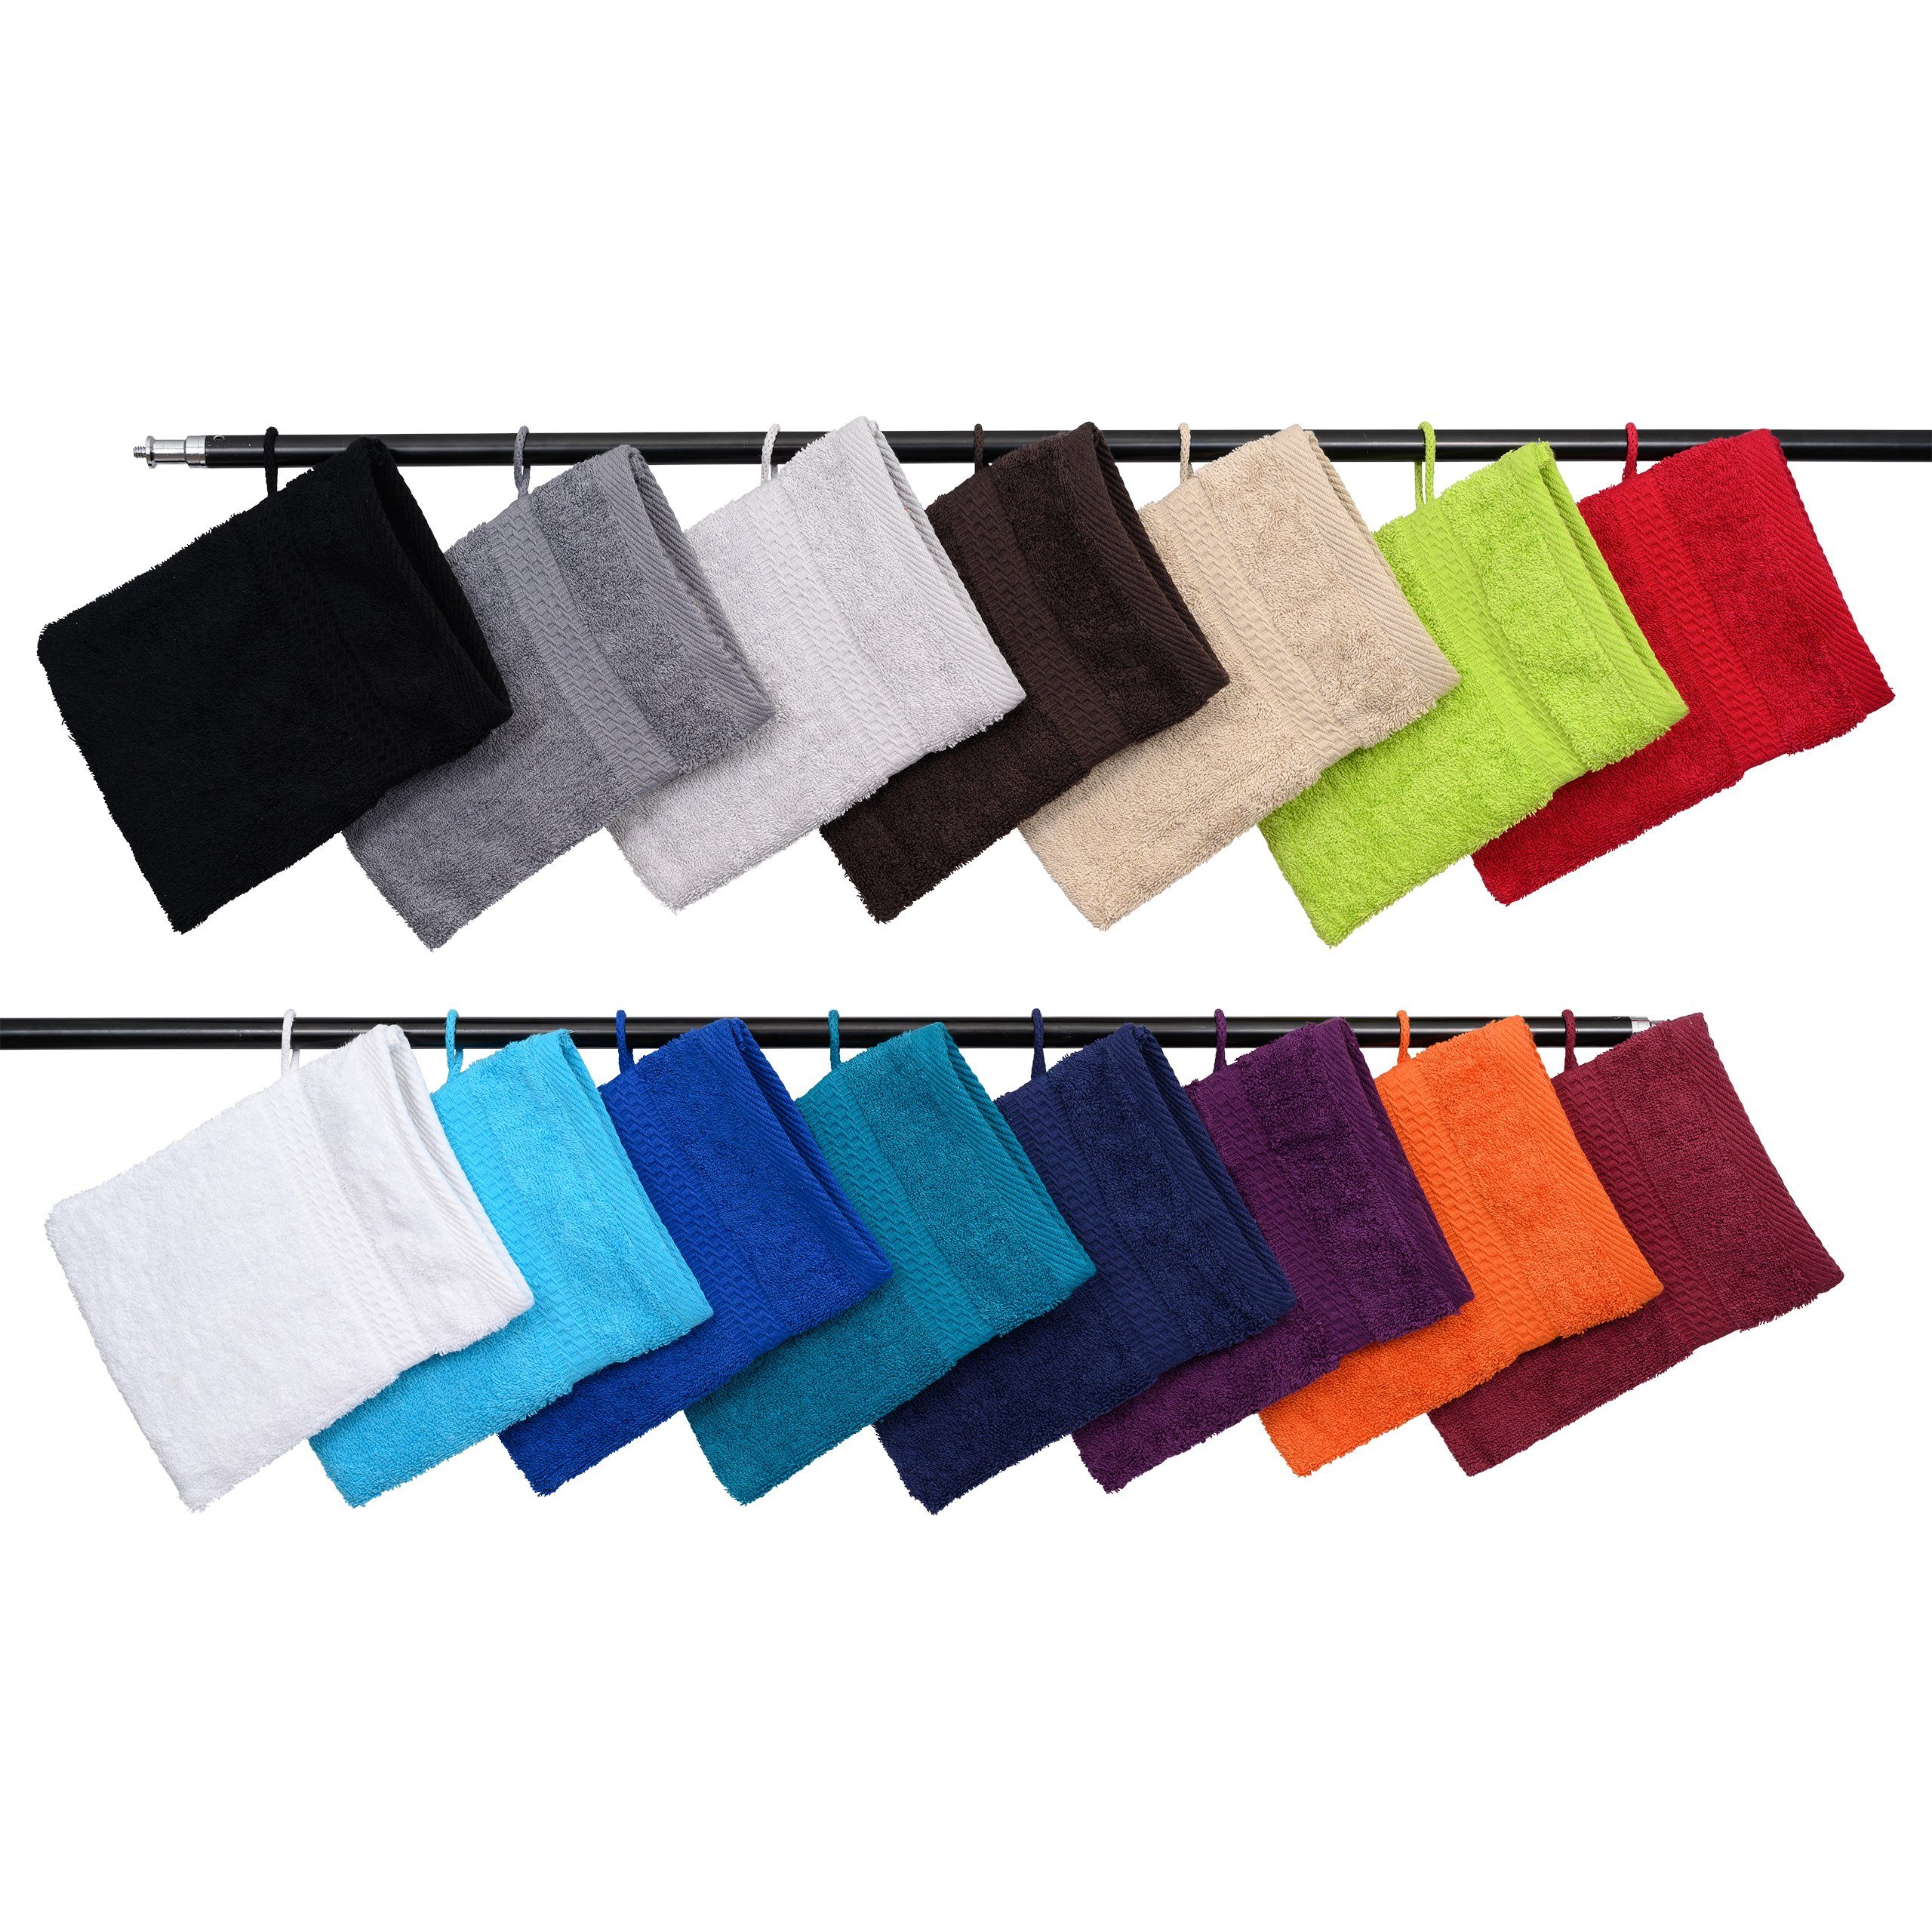 Hometex Premium Textiles Waschhandschuh Waschhandschuh in vielen verschiedenen Farben & im praktischen 10er Set Türkis